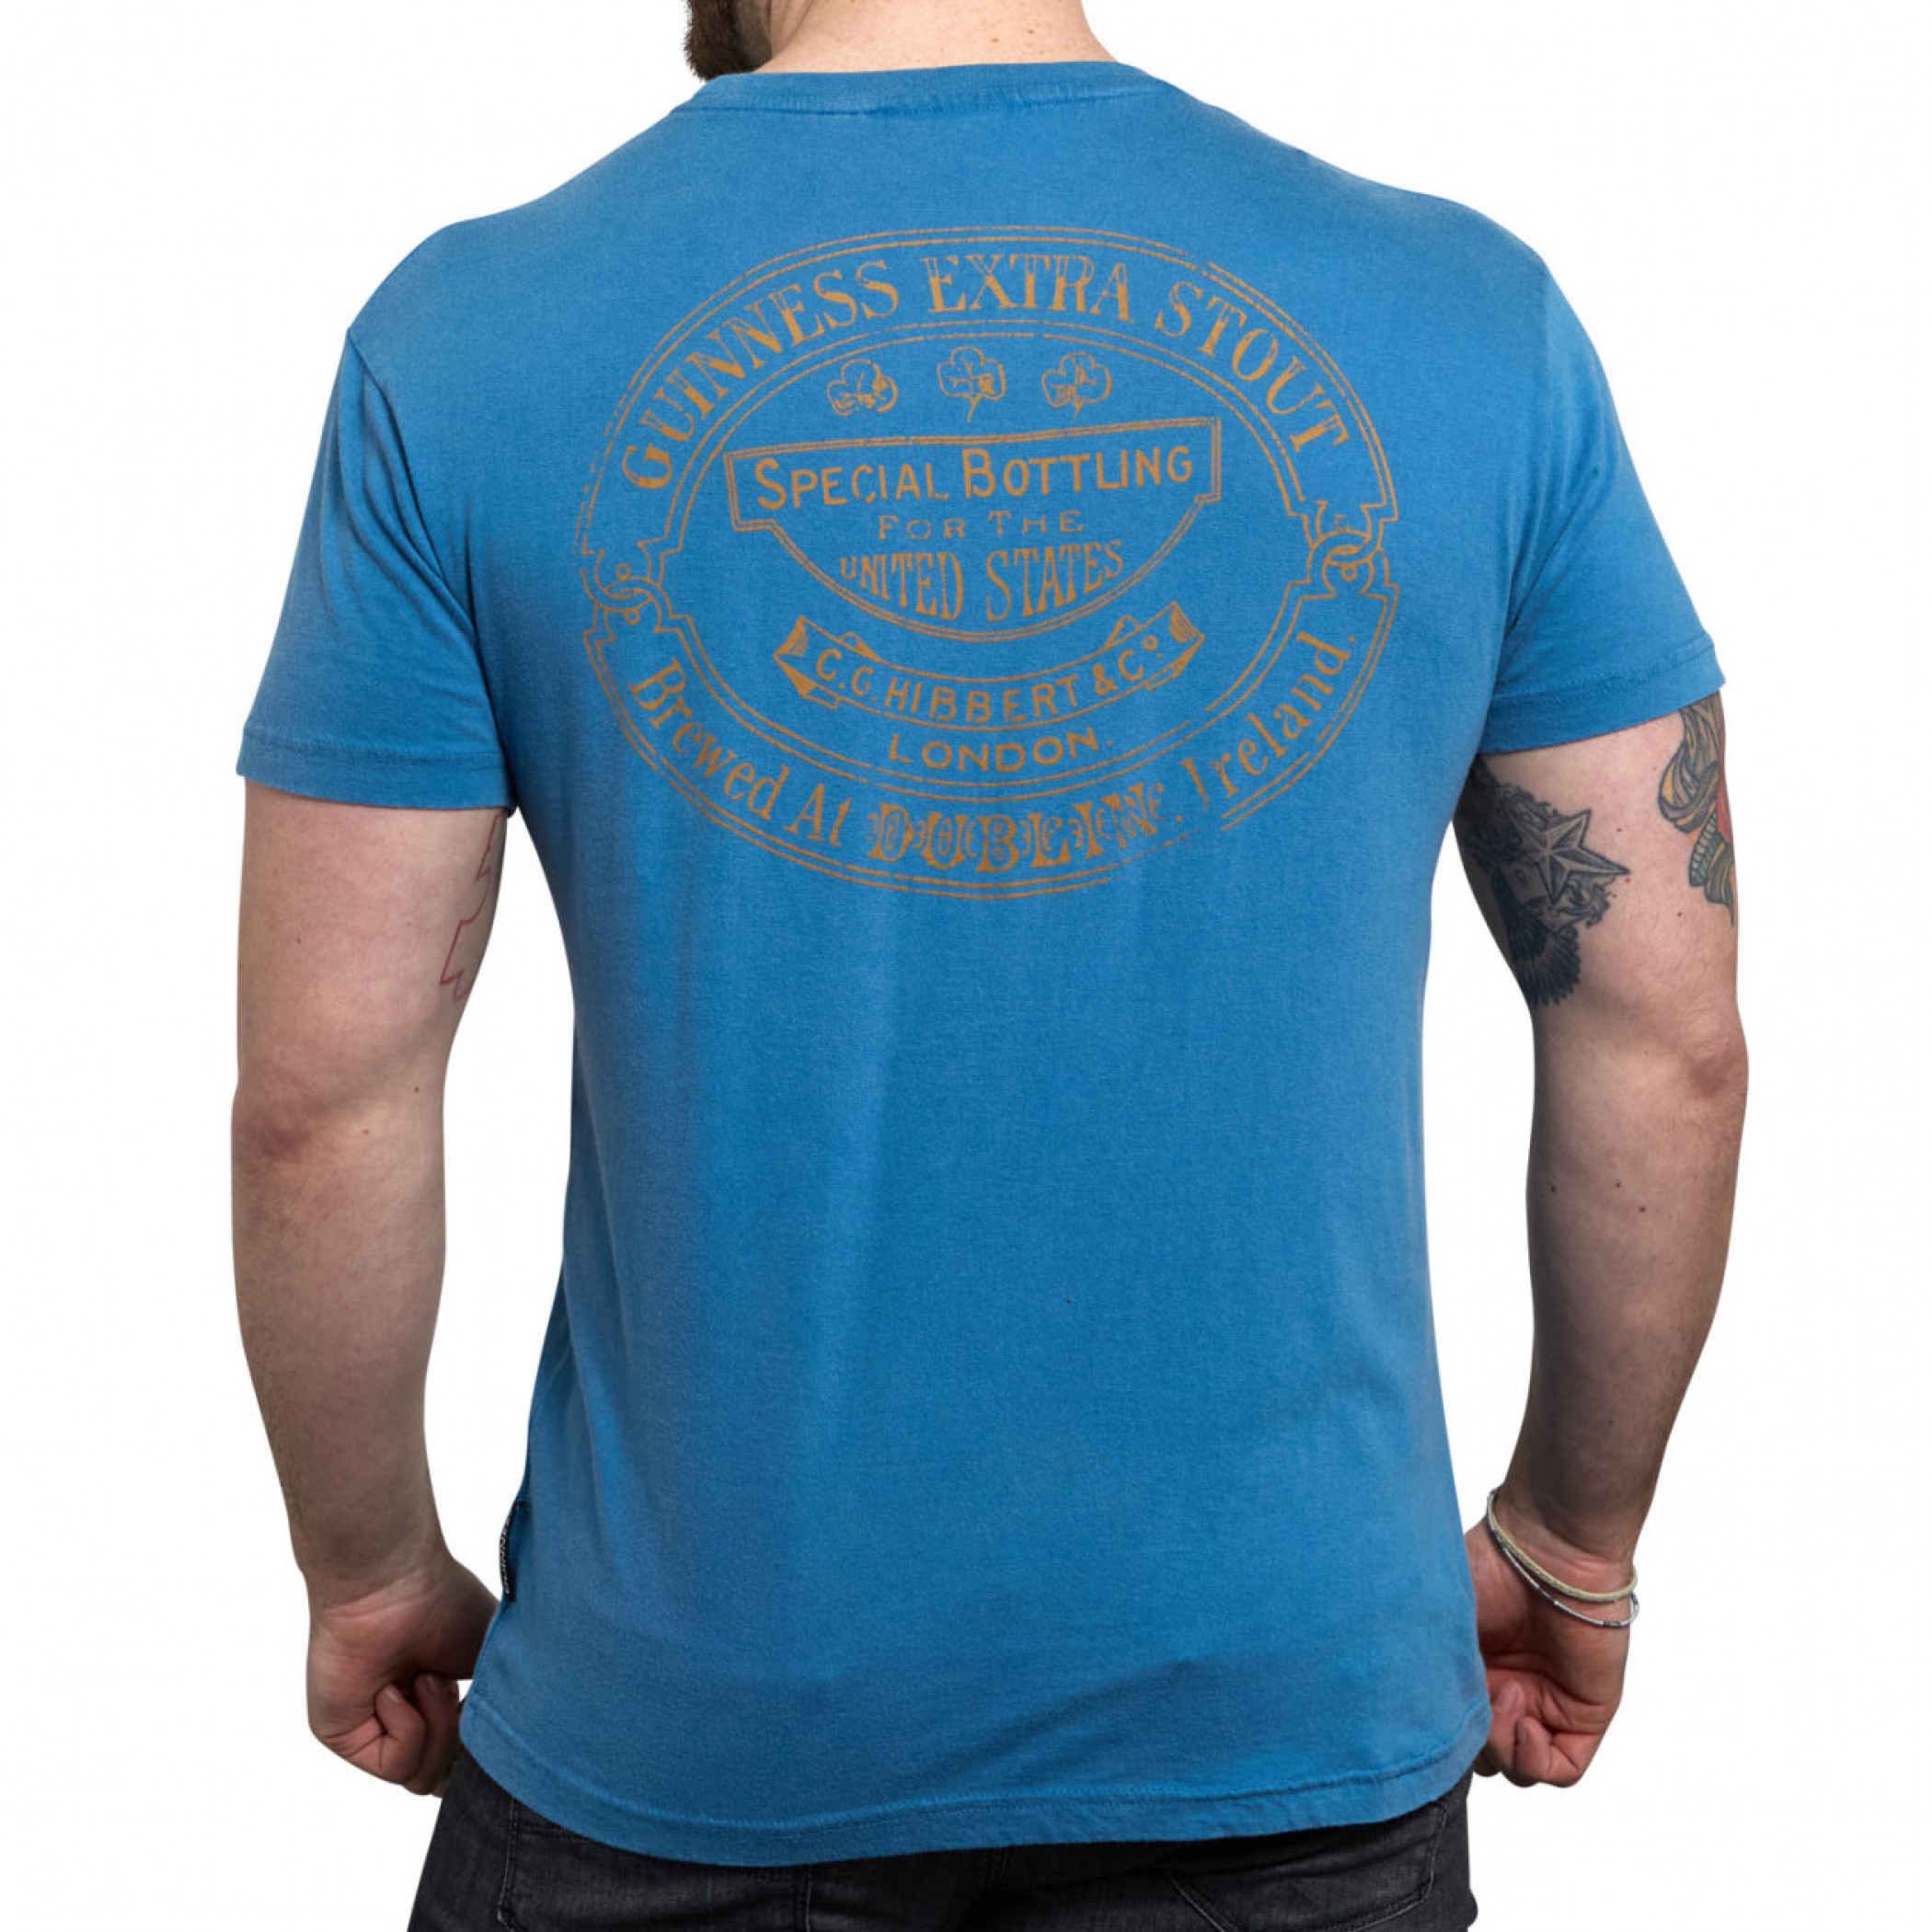 Guinness Harp Logo Blue T-Shirt